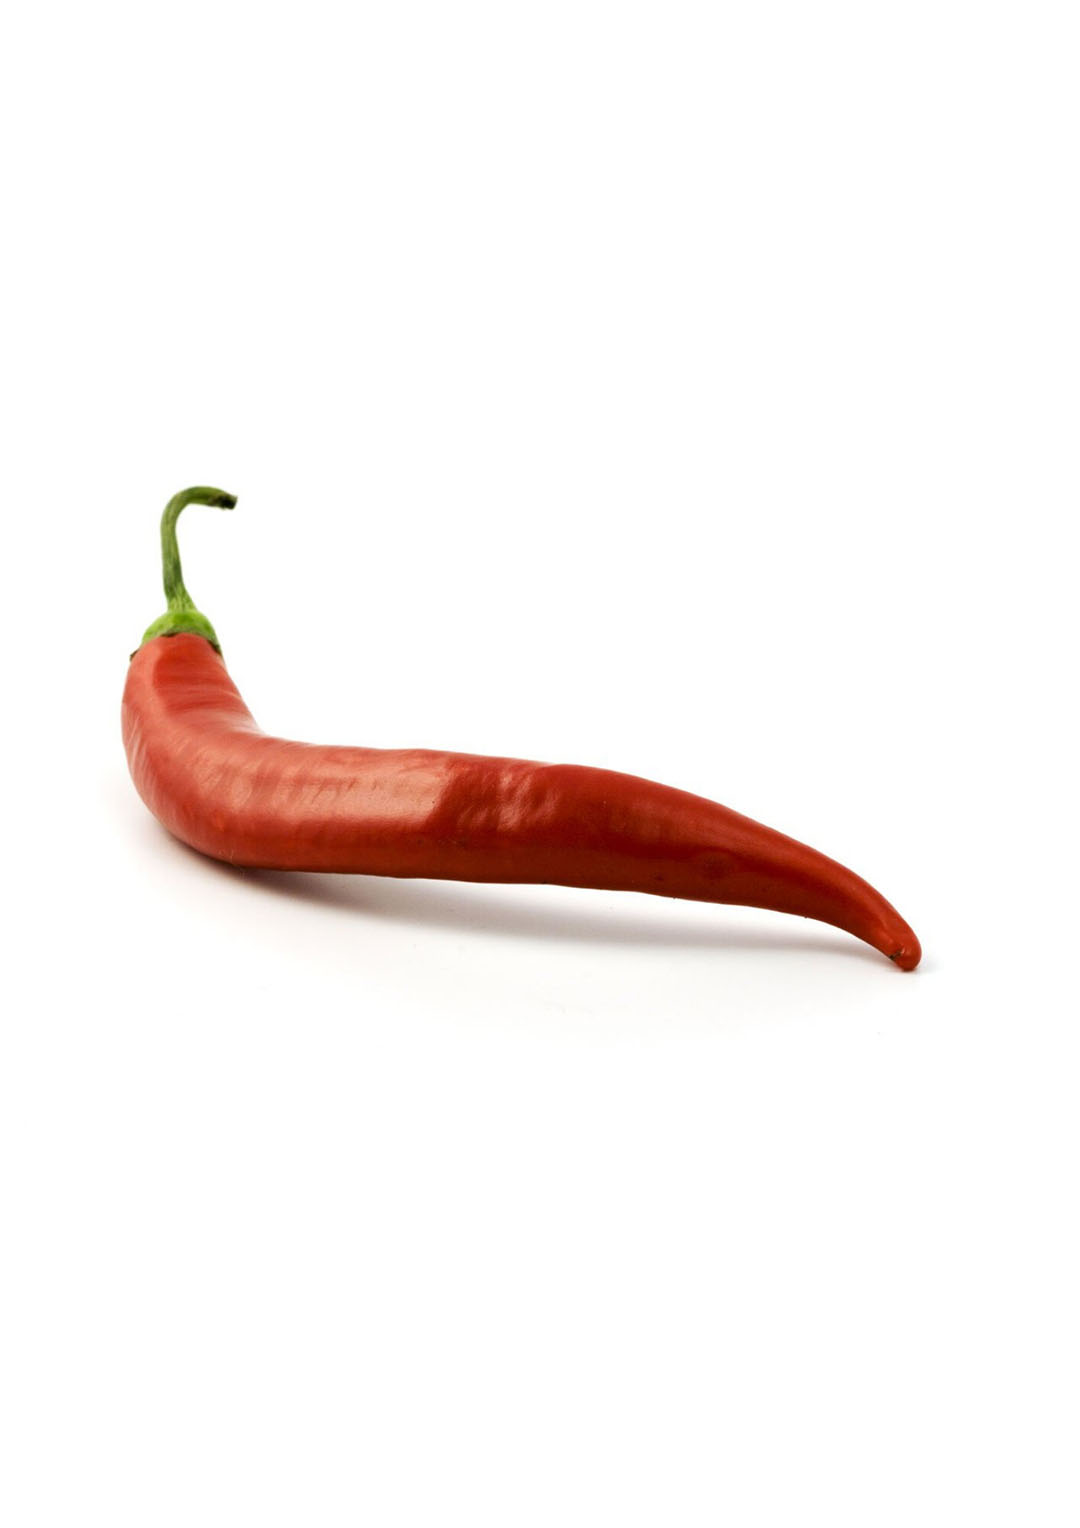 La capsaicina, fuente del sabor picante del chile, ha demostrado ser beneficiosa para la salud de los animales. Foto: Canva